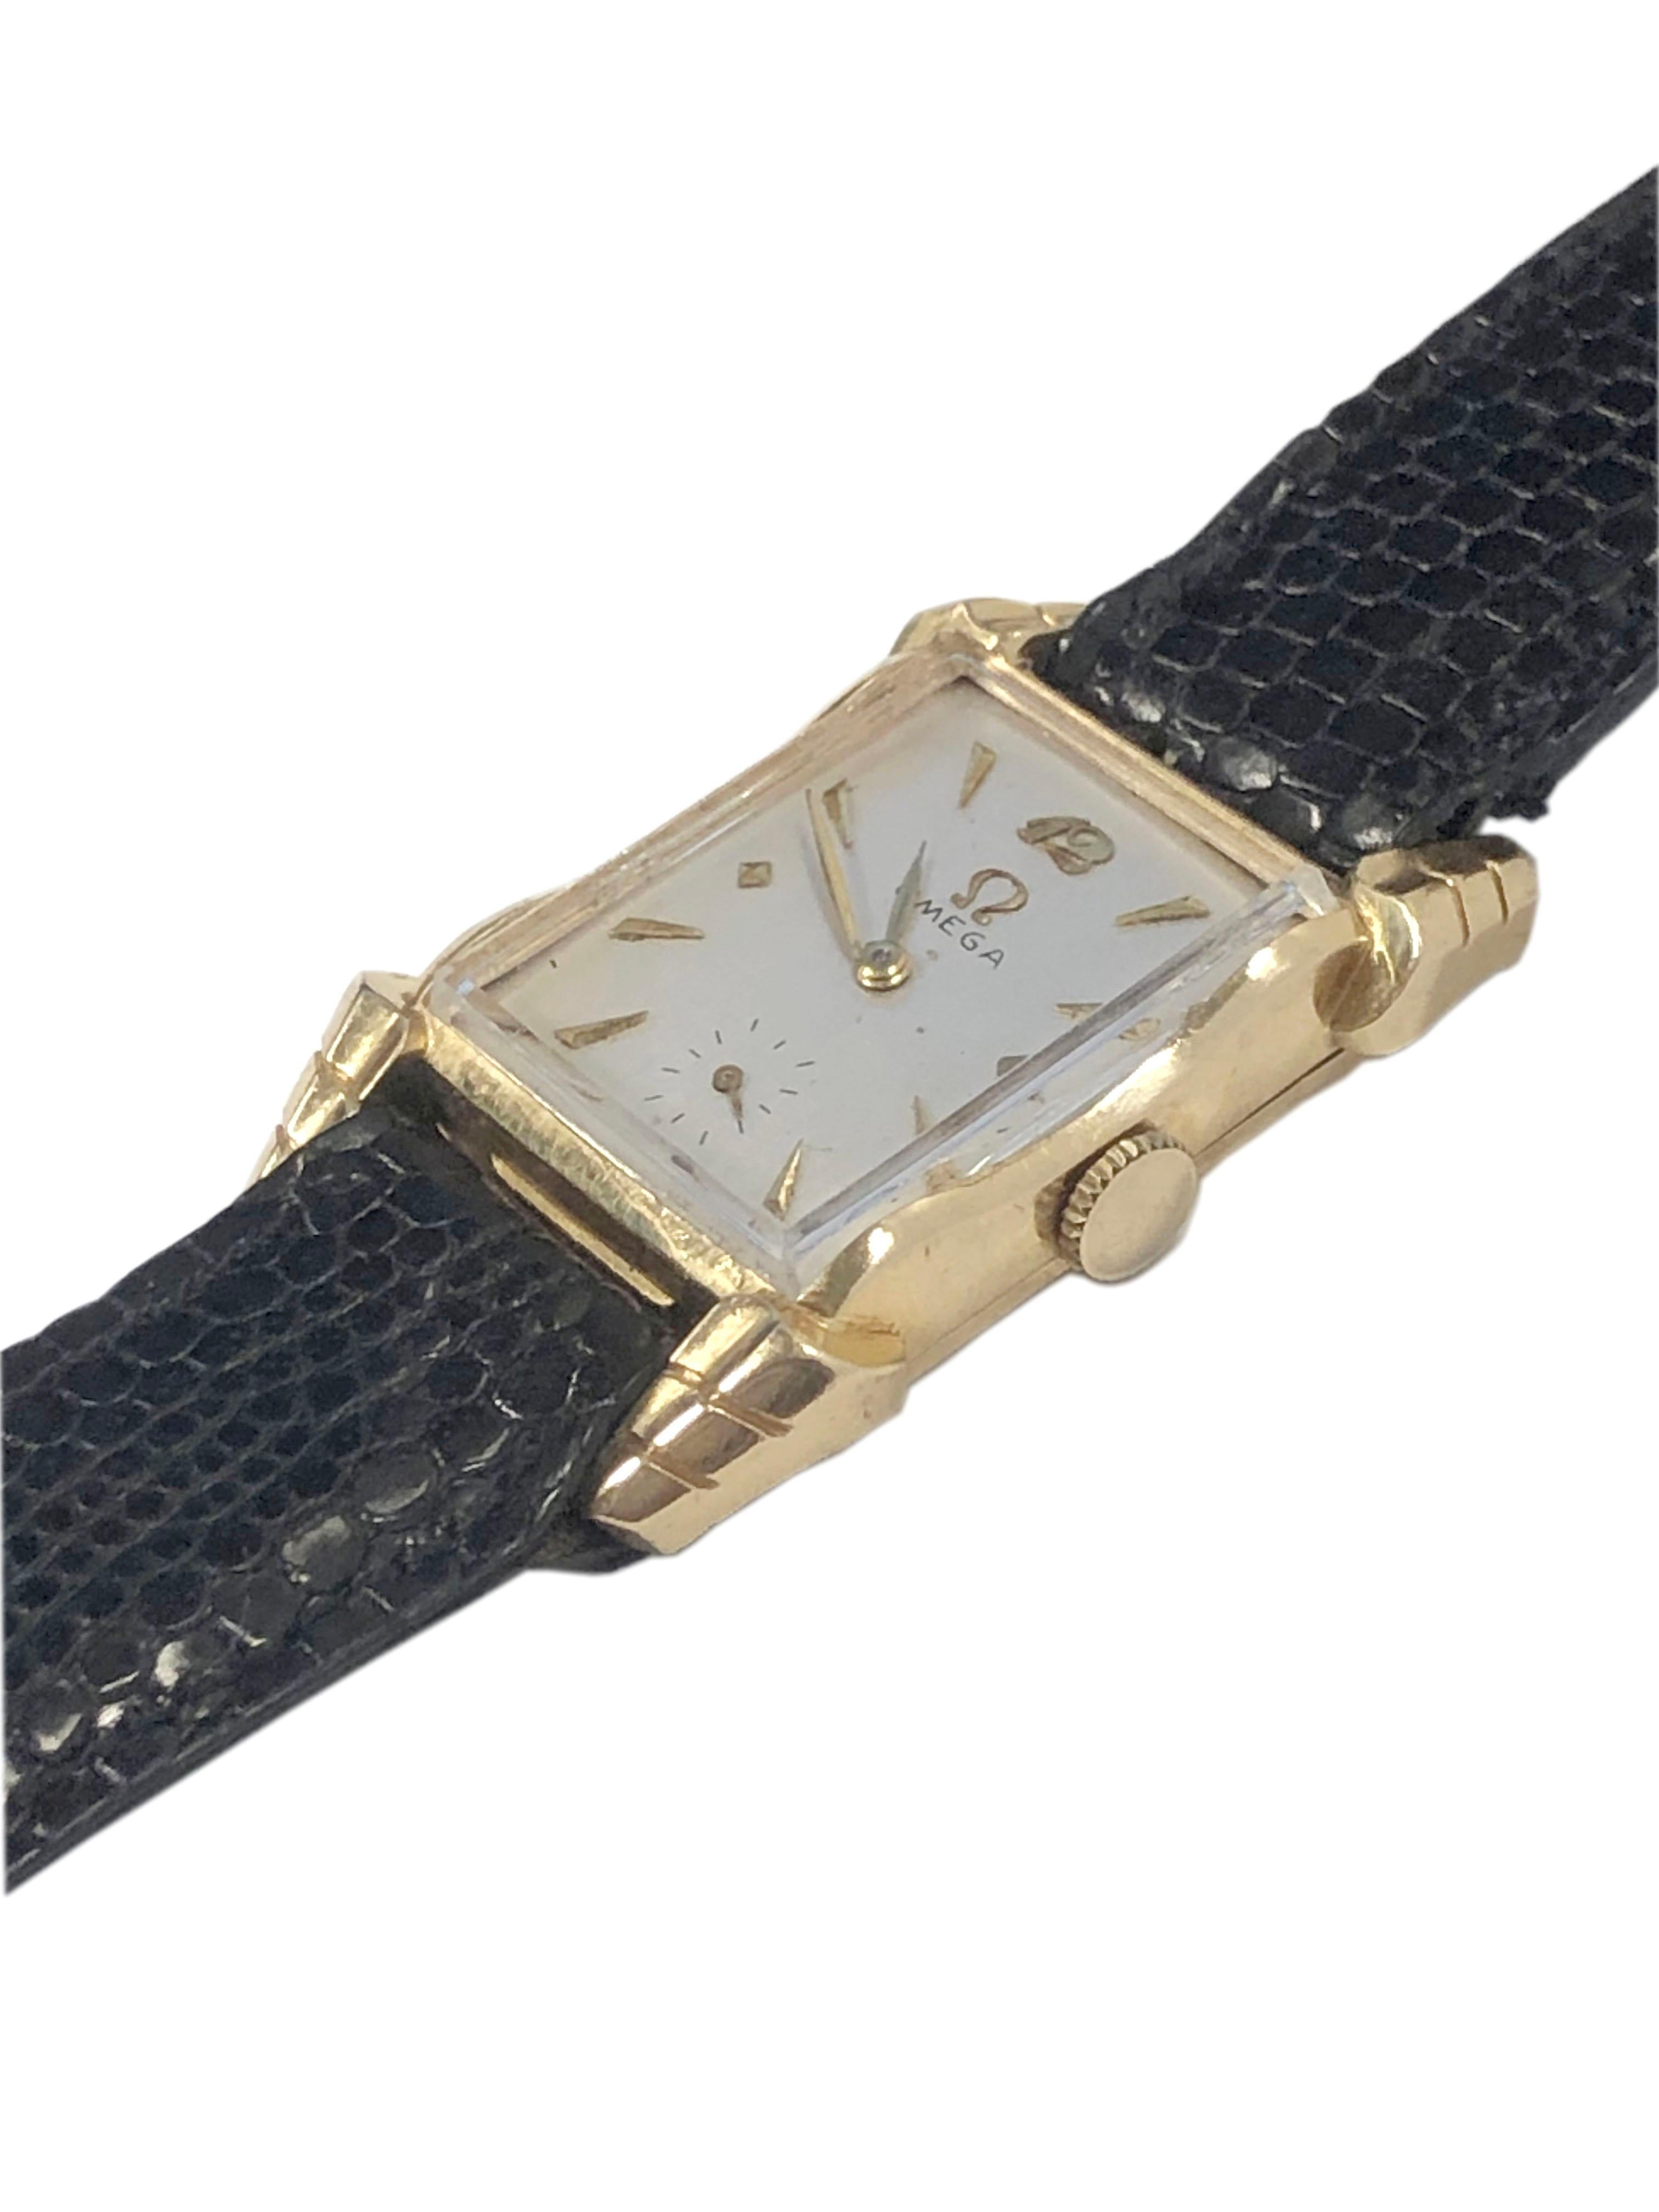 Circa 1940 Montre-bracelet Omega, 39 X 21 M.M. Boîtier 2 pièces en or jaune 14k signé Omega avec cornes évasées fantaisie. mouvement mécanique à 17 rubis, à remontage manuel. Cadran en satin argenté avec des marqueurs en or en relief. Lézard noir.